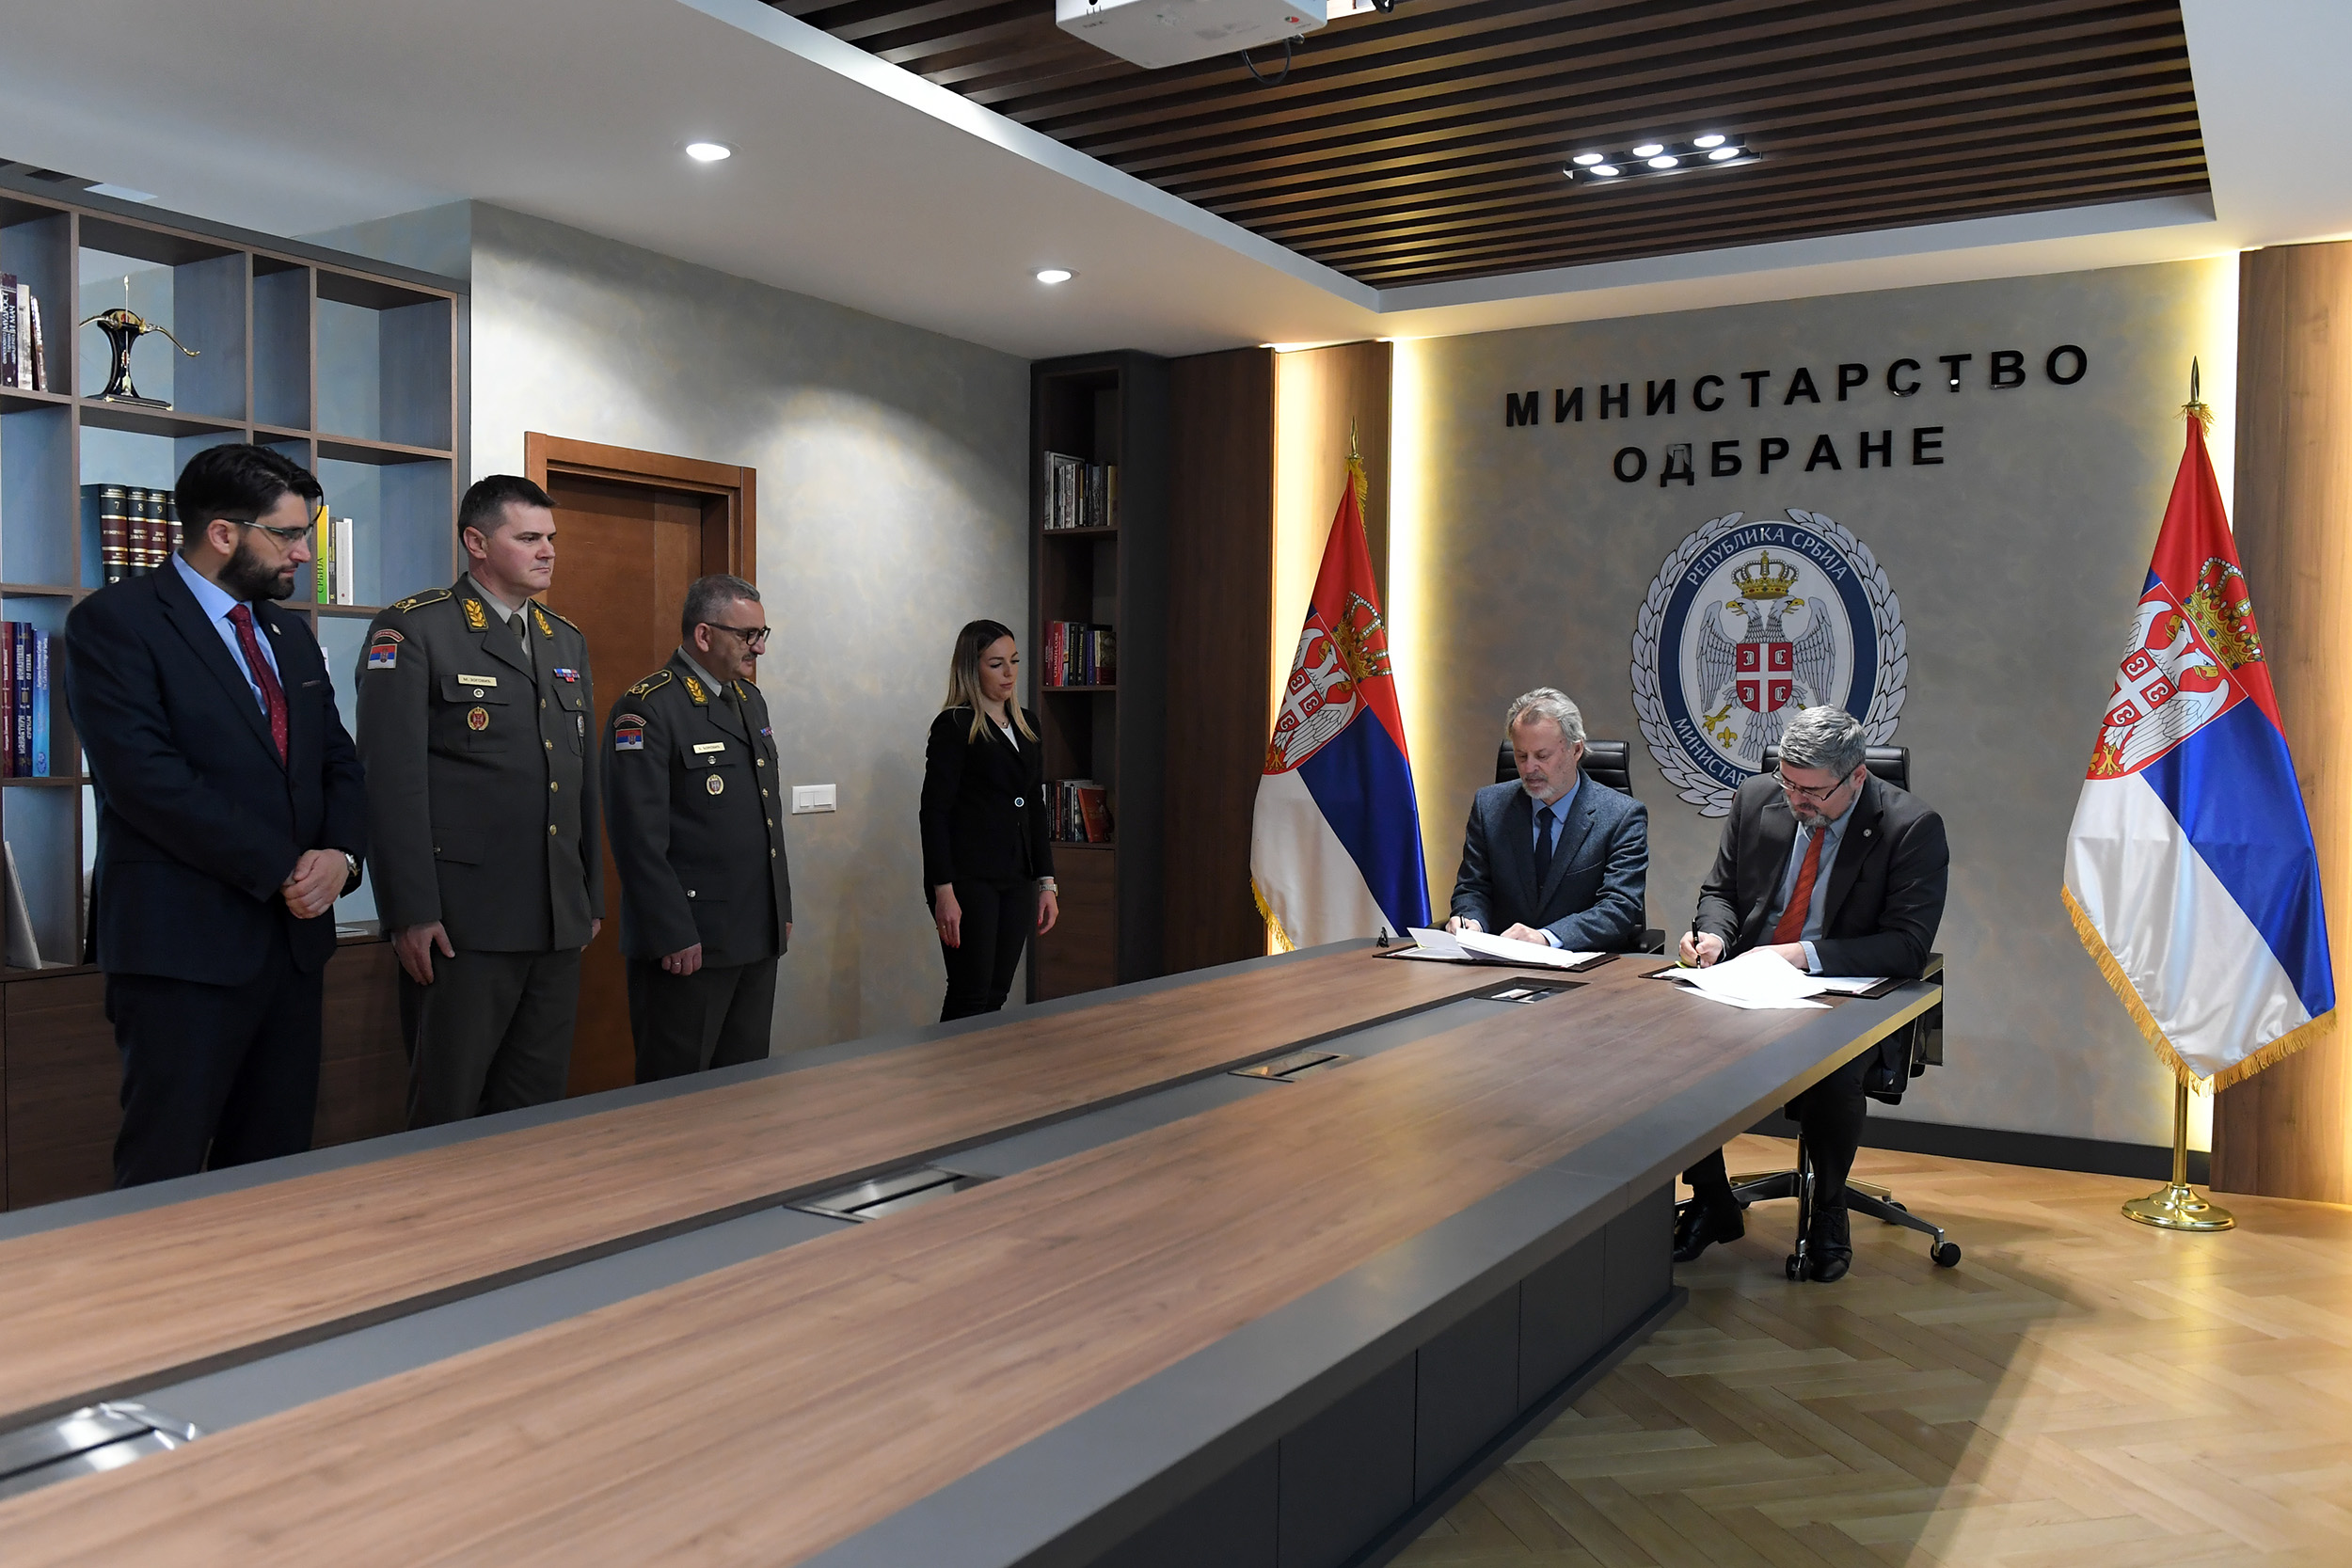 Ministarstvo odbrane i Institut za noviju istoriju Srbije potpisali sporazum  